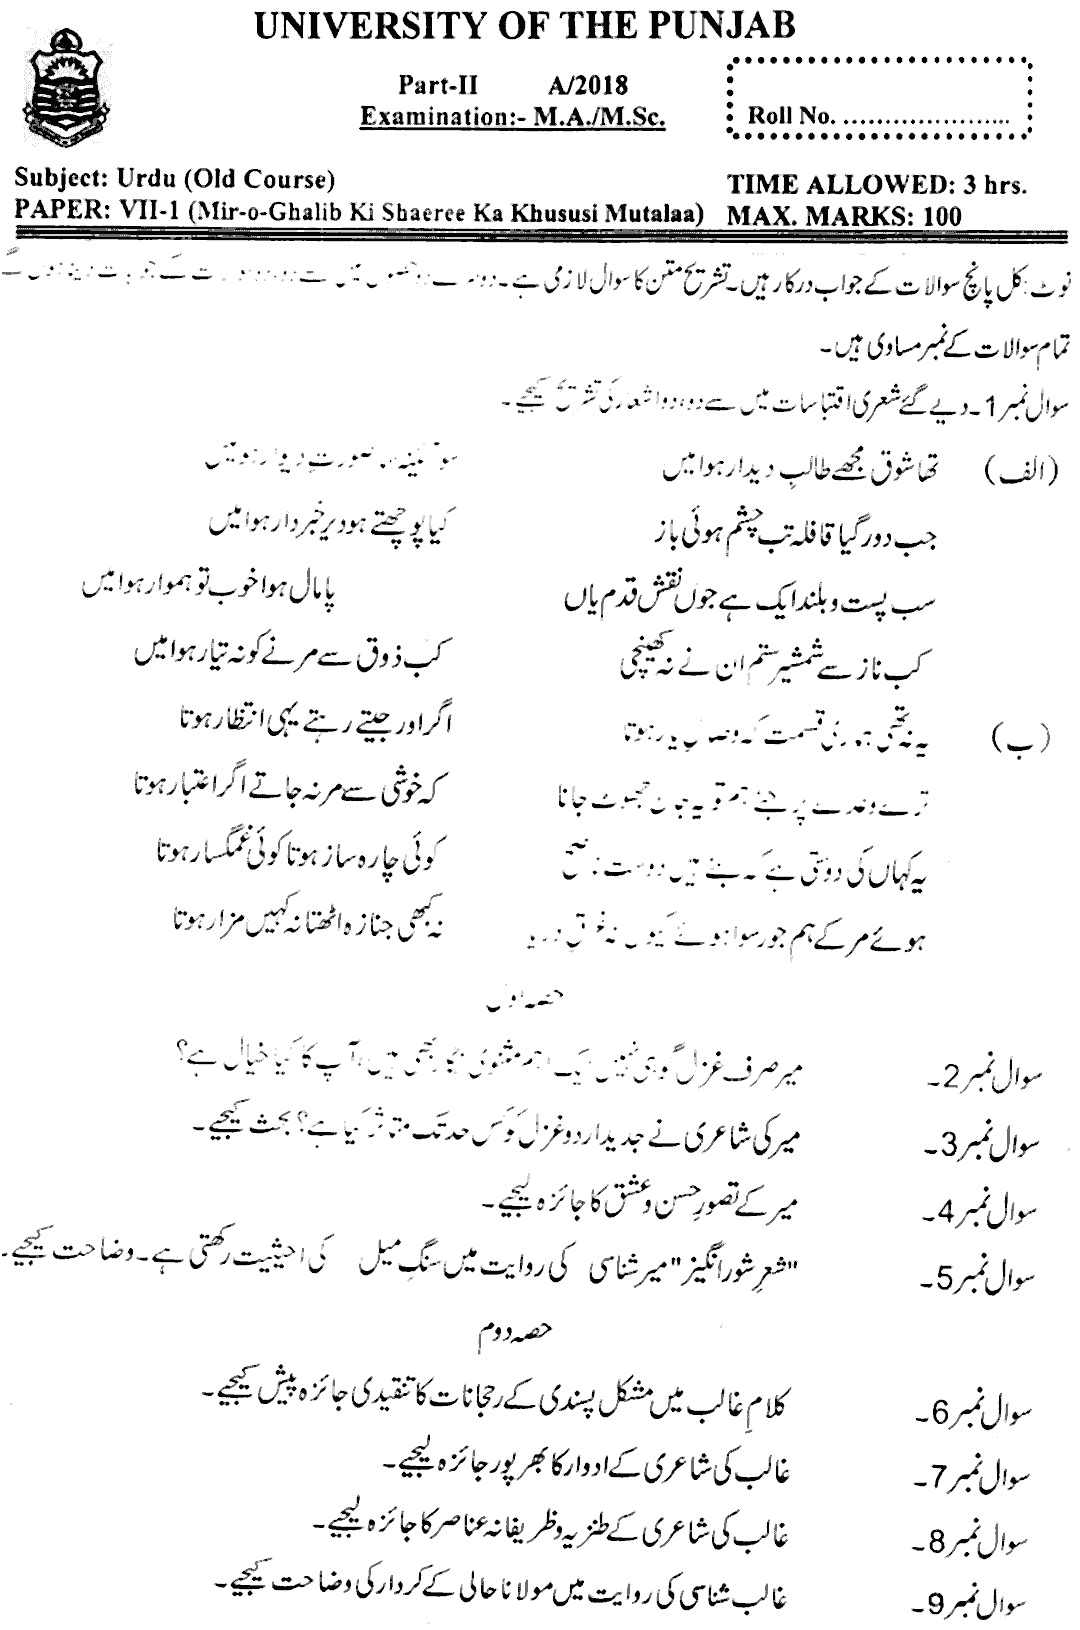 MA Part 2 Urdu Mir O Ghalib Key Shaeree Ka Khususi Mutalaa Past Paper 2018 Punjab University Old Syllabus